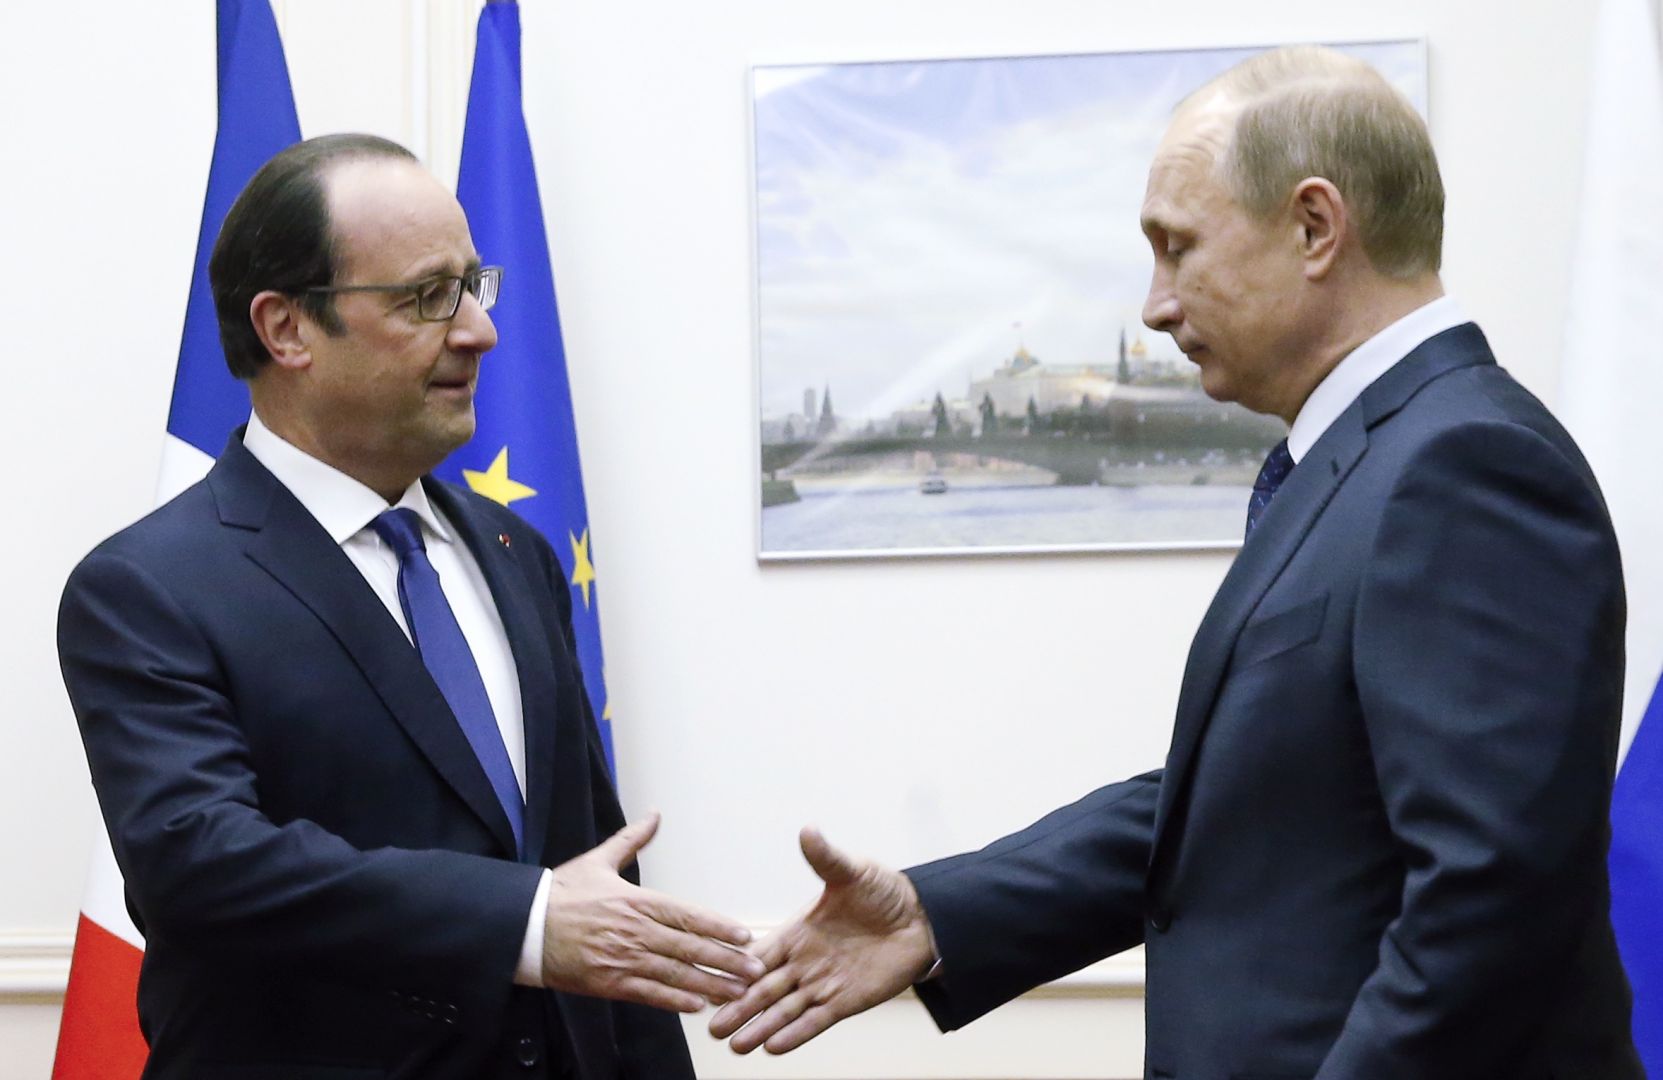 Ολάντ και Πούτιν συμφώνησαν στην ανταλλαγή πληροφοριών για τη Συρία